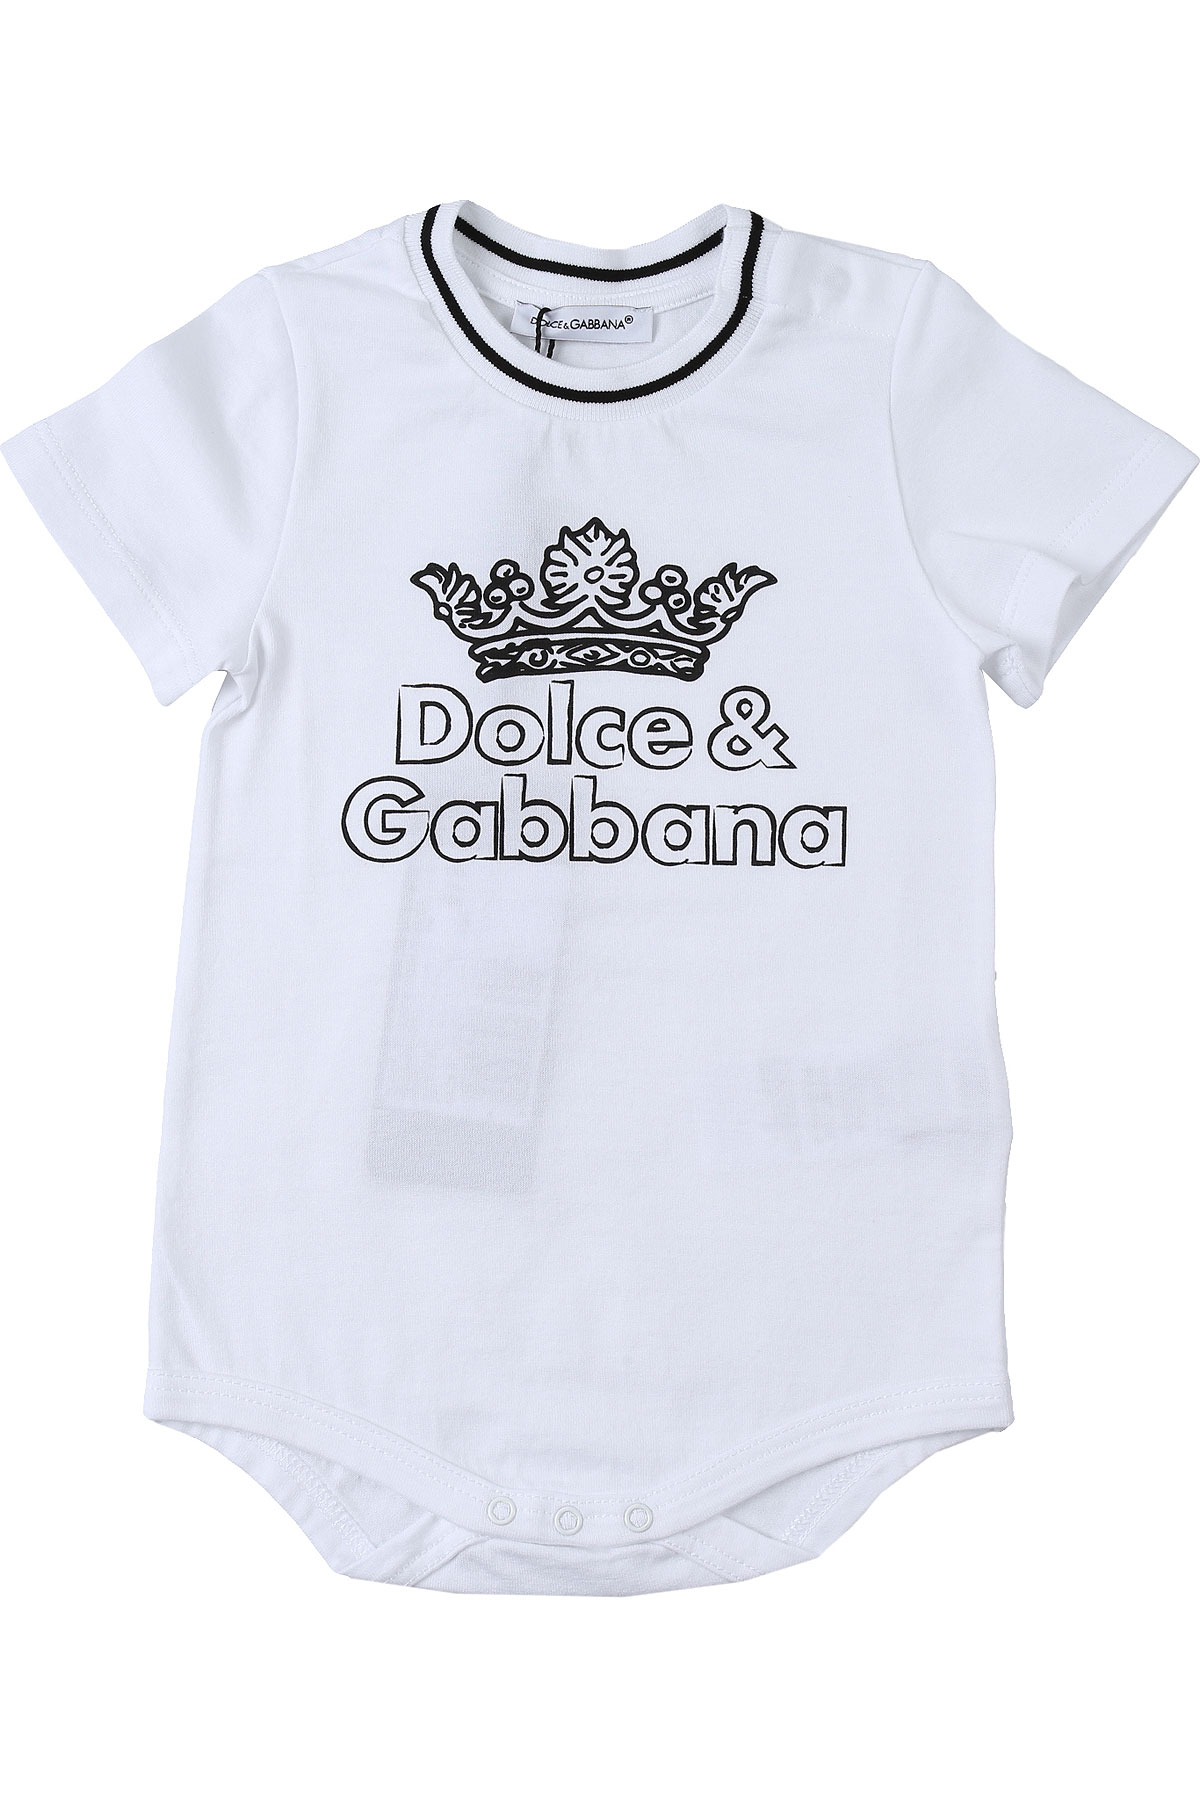 Dolce & Gabbana Baby Bodys & Strampelanzug für Jungen Günstig im Sale, Weiss, Baumwolle, 2017, 12 M 3M 6M 9M